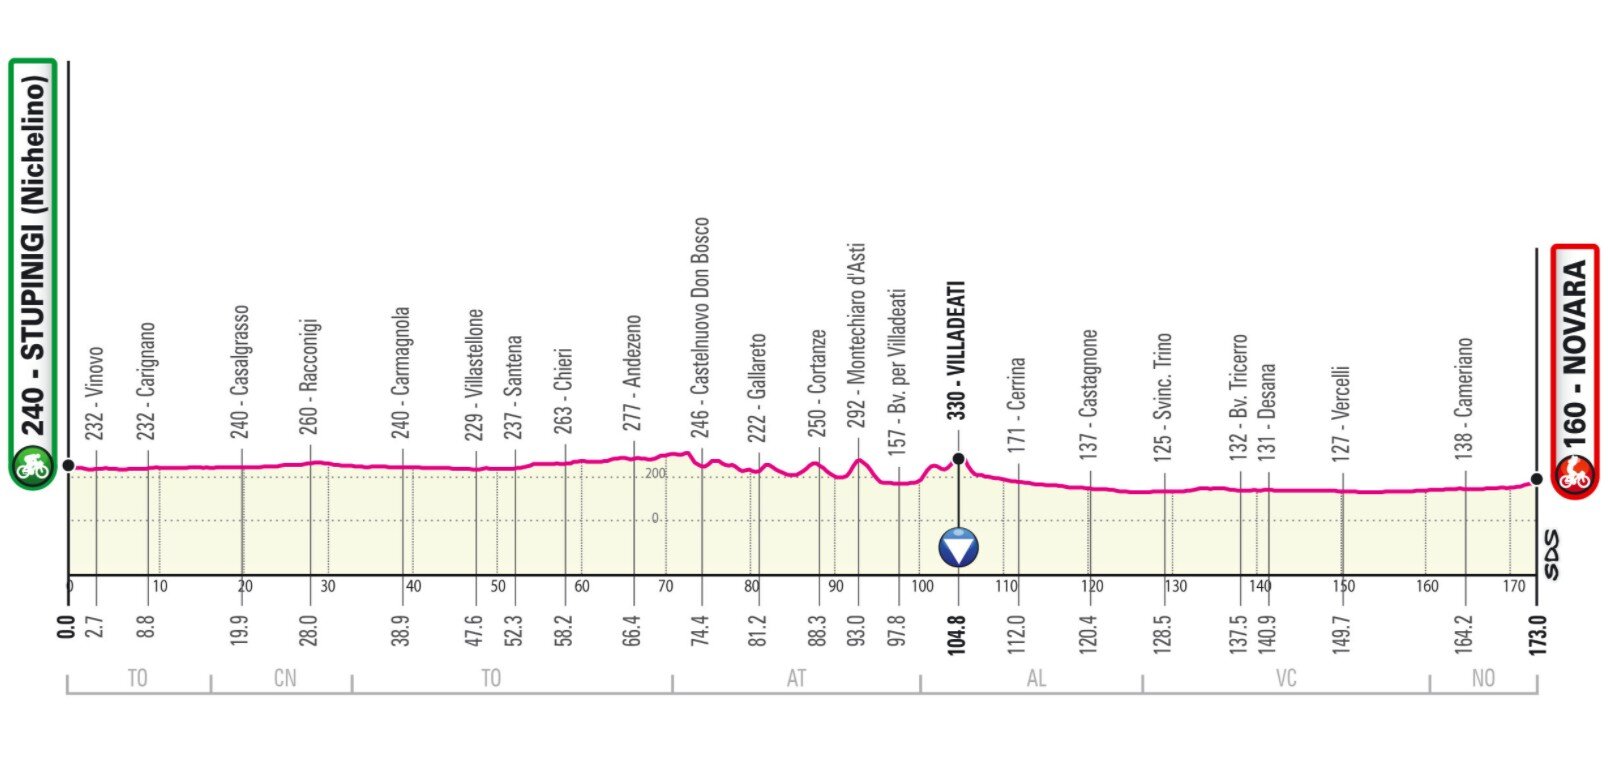 Etapa 2 Giro Italia 2021